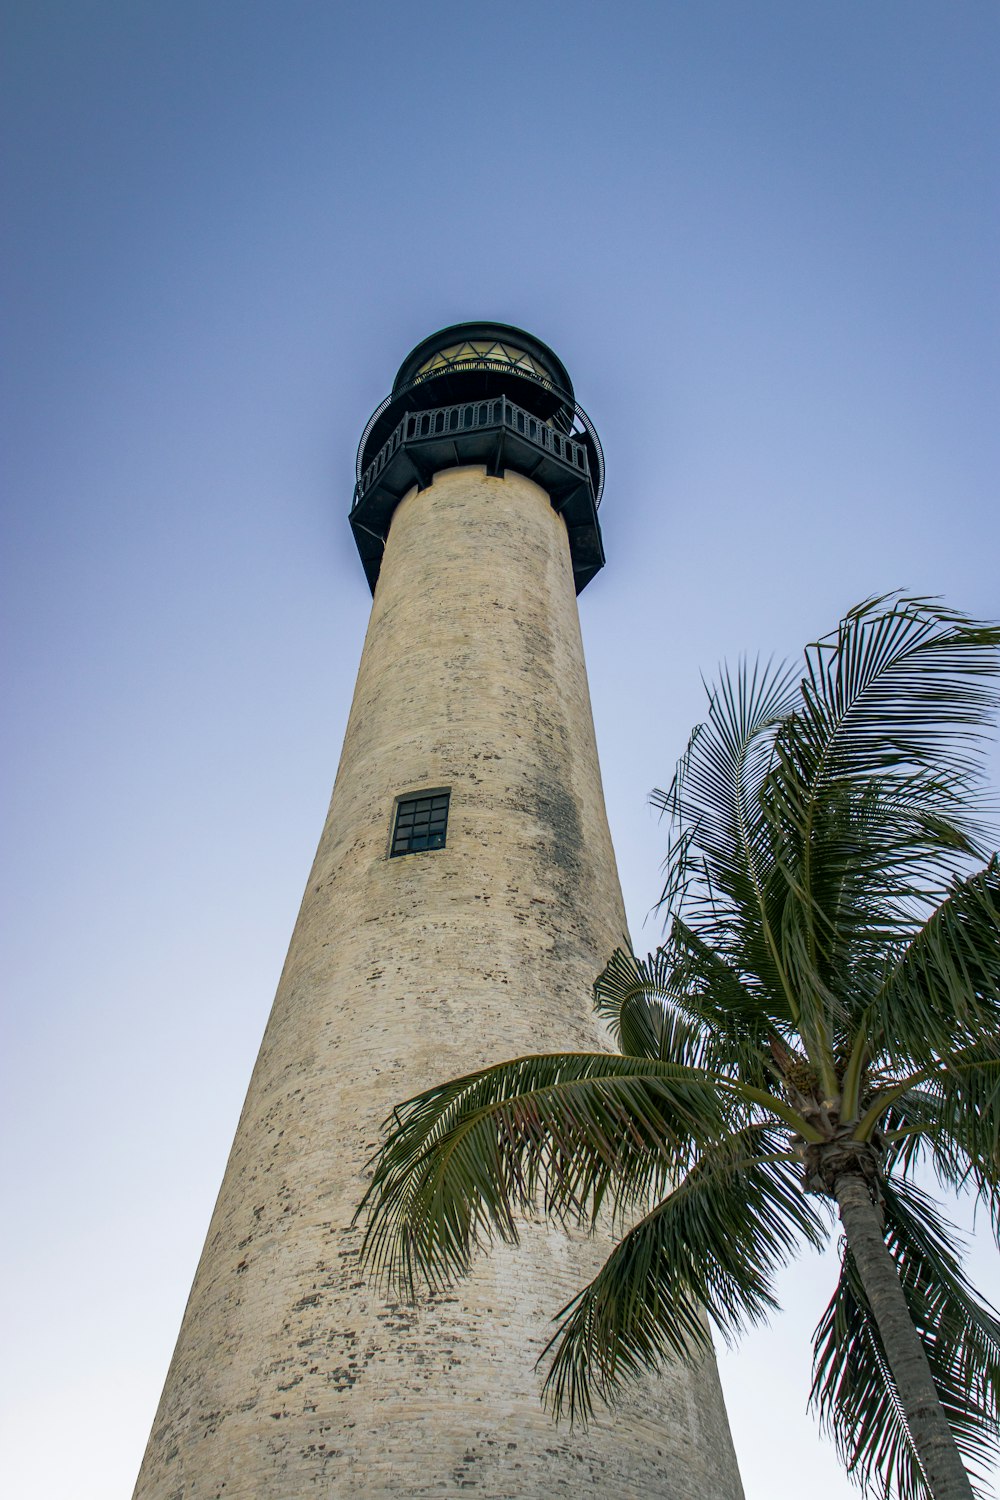 una torre alta con un reloj en la parte superior junto a una palmera